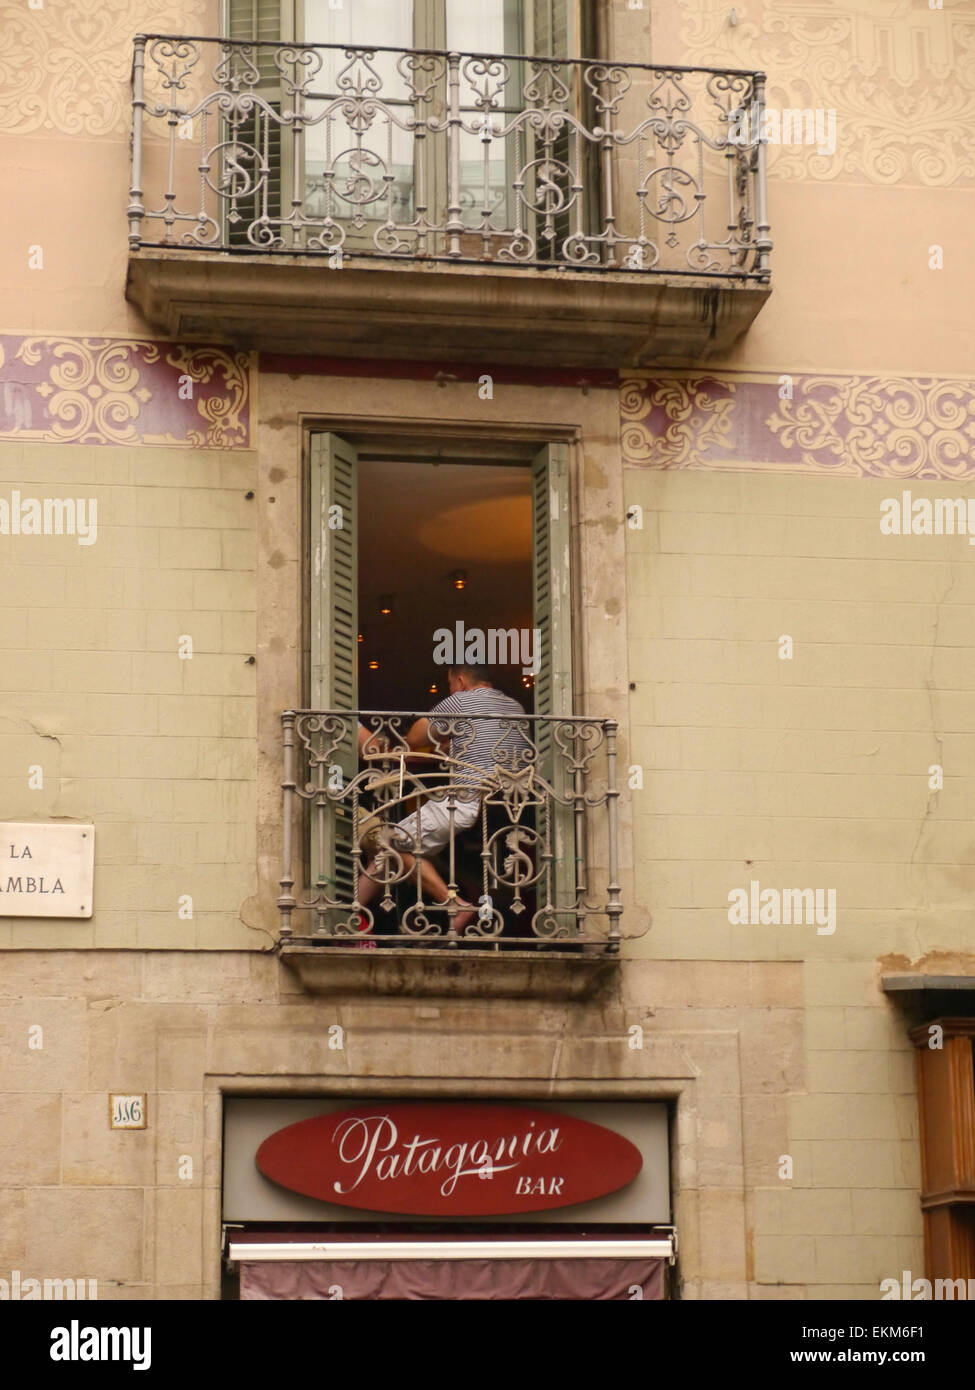 Un homme assis dans une fenêtre balcon à Barcelone, Espagne Banque D'Images